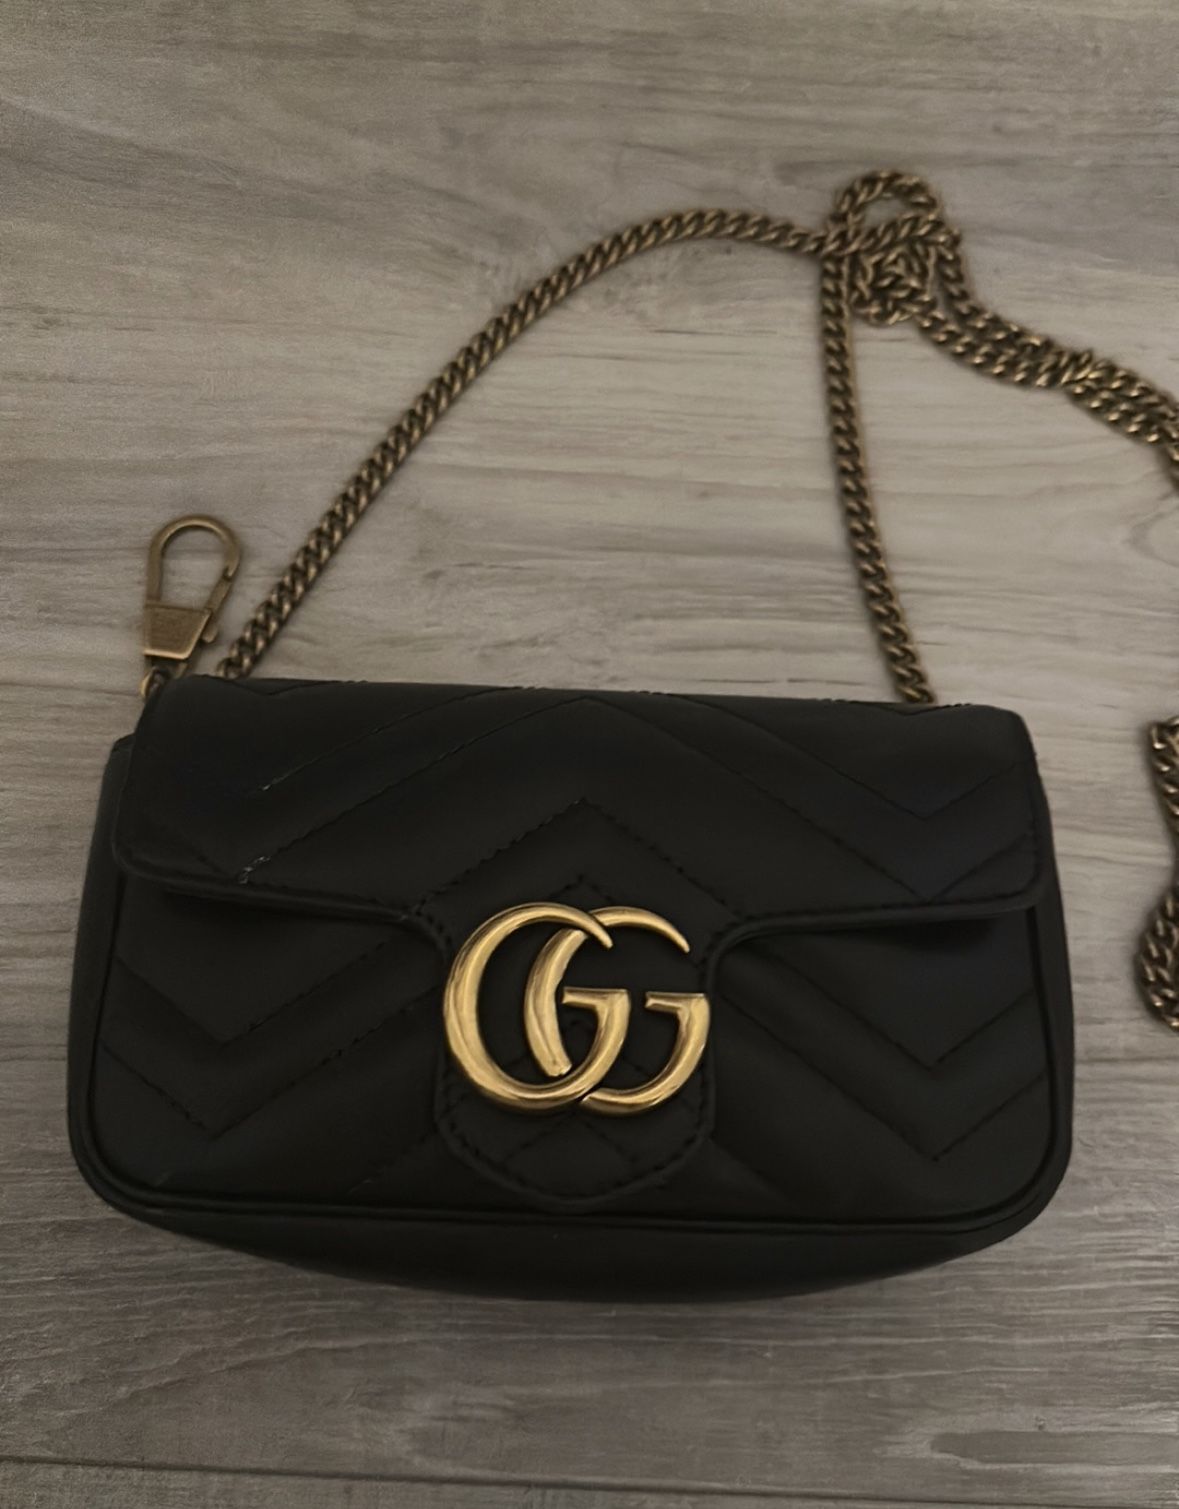 Gucci GG Marmont Mini Bag Originally $1200